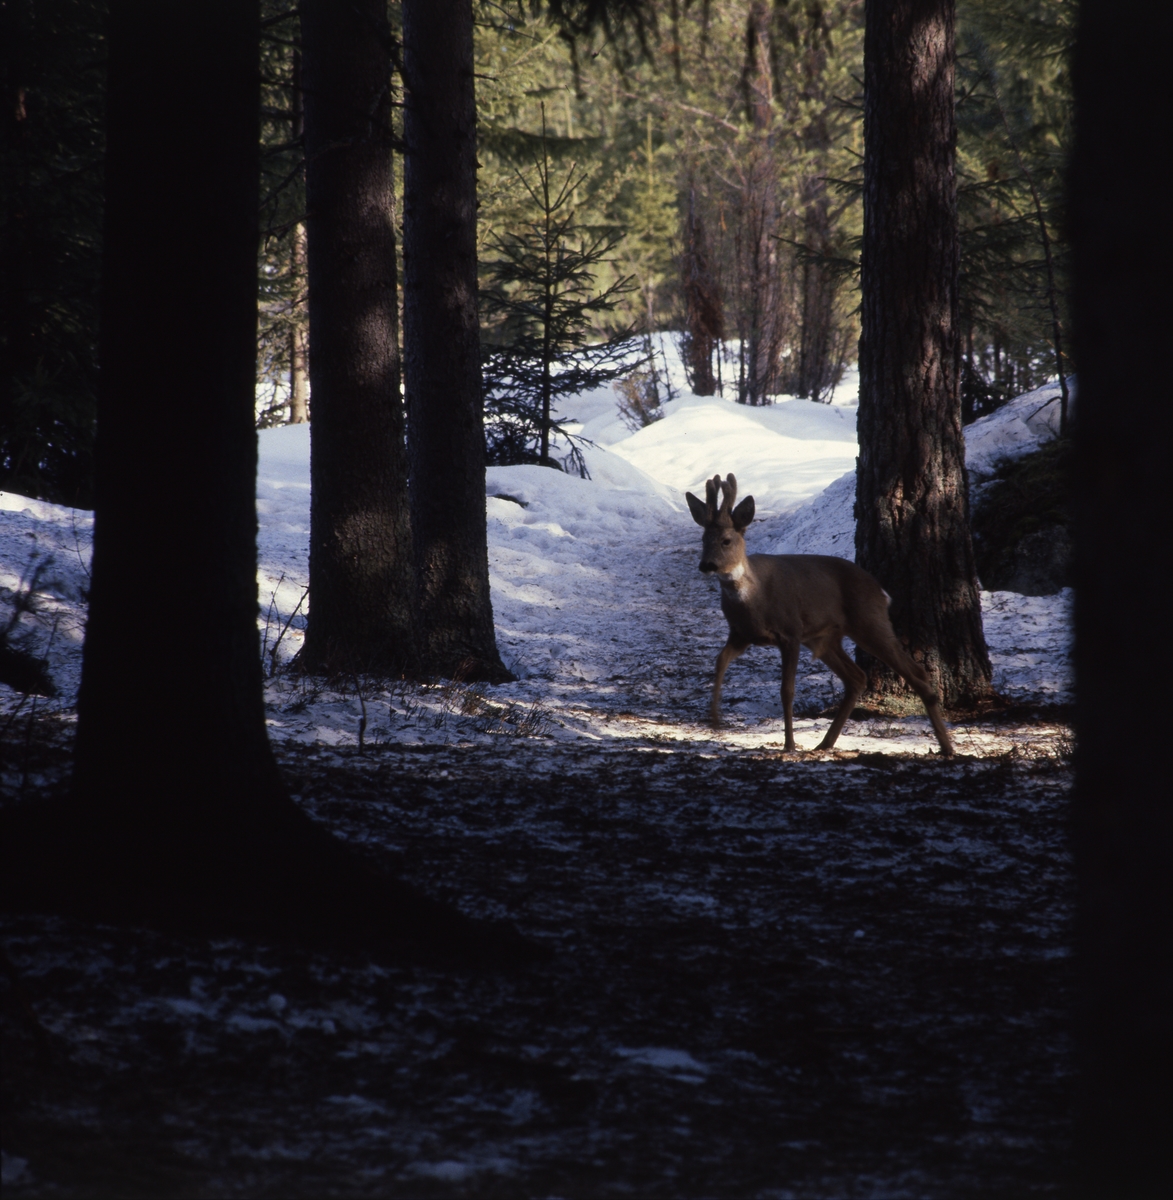 I skuggan mellan några trädstammar i skogen går en råbock och tittar, 28 mars 1982.